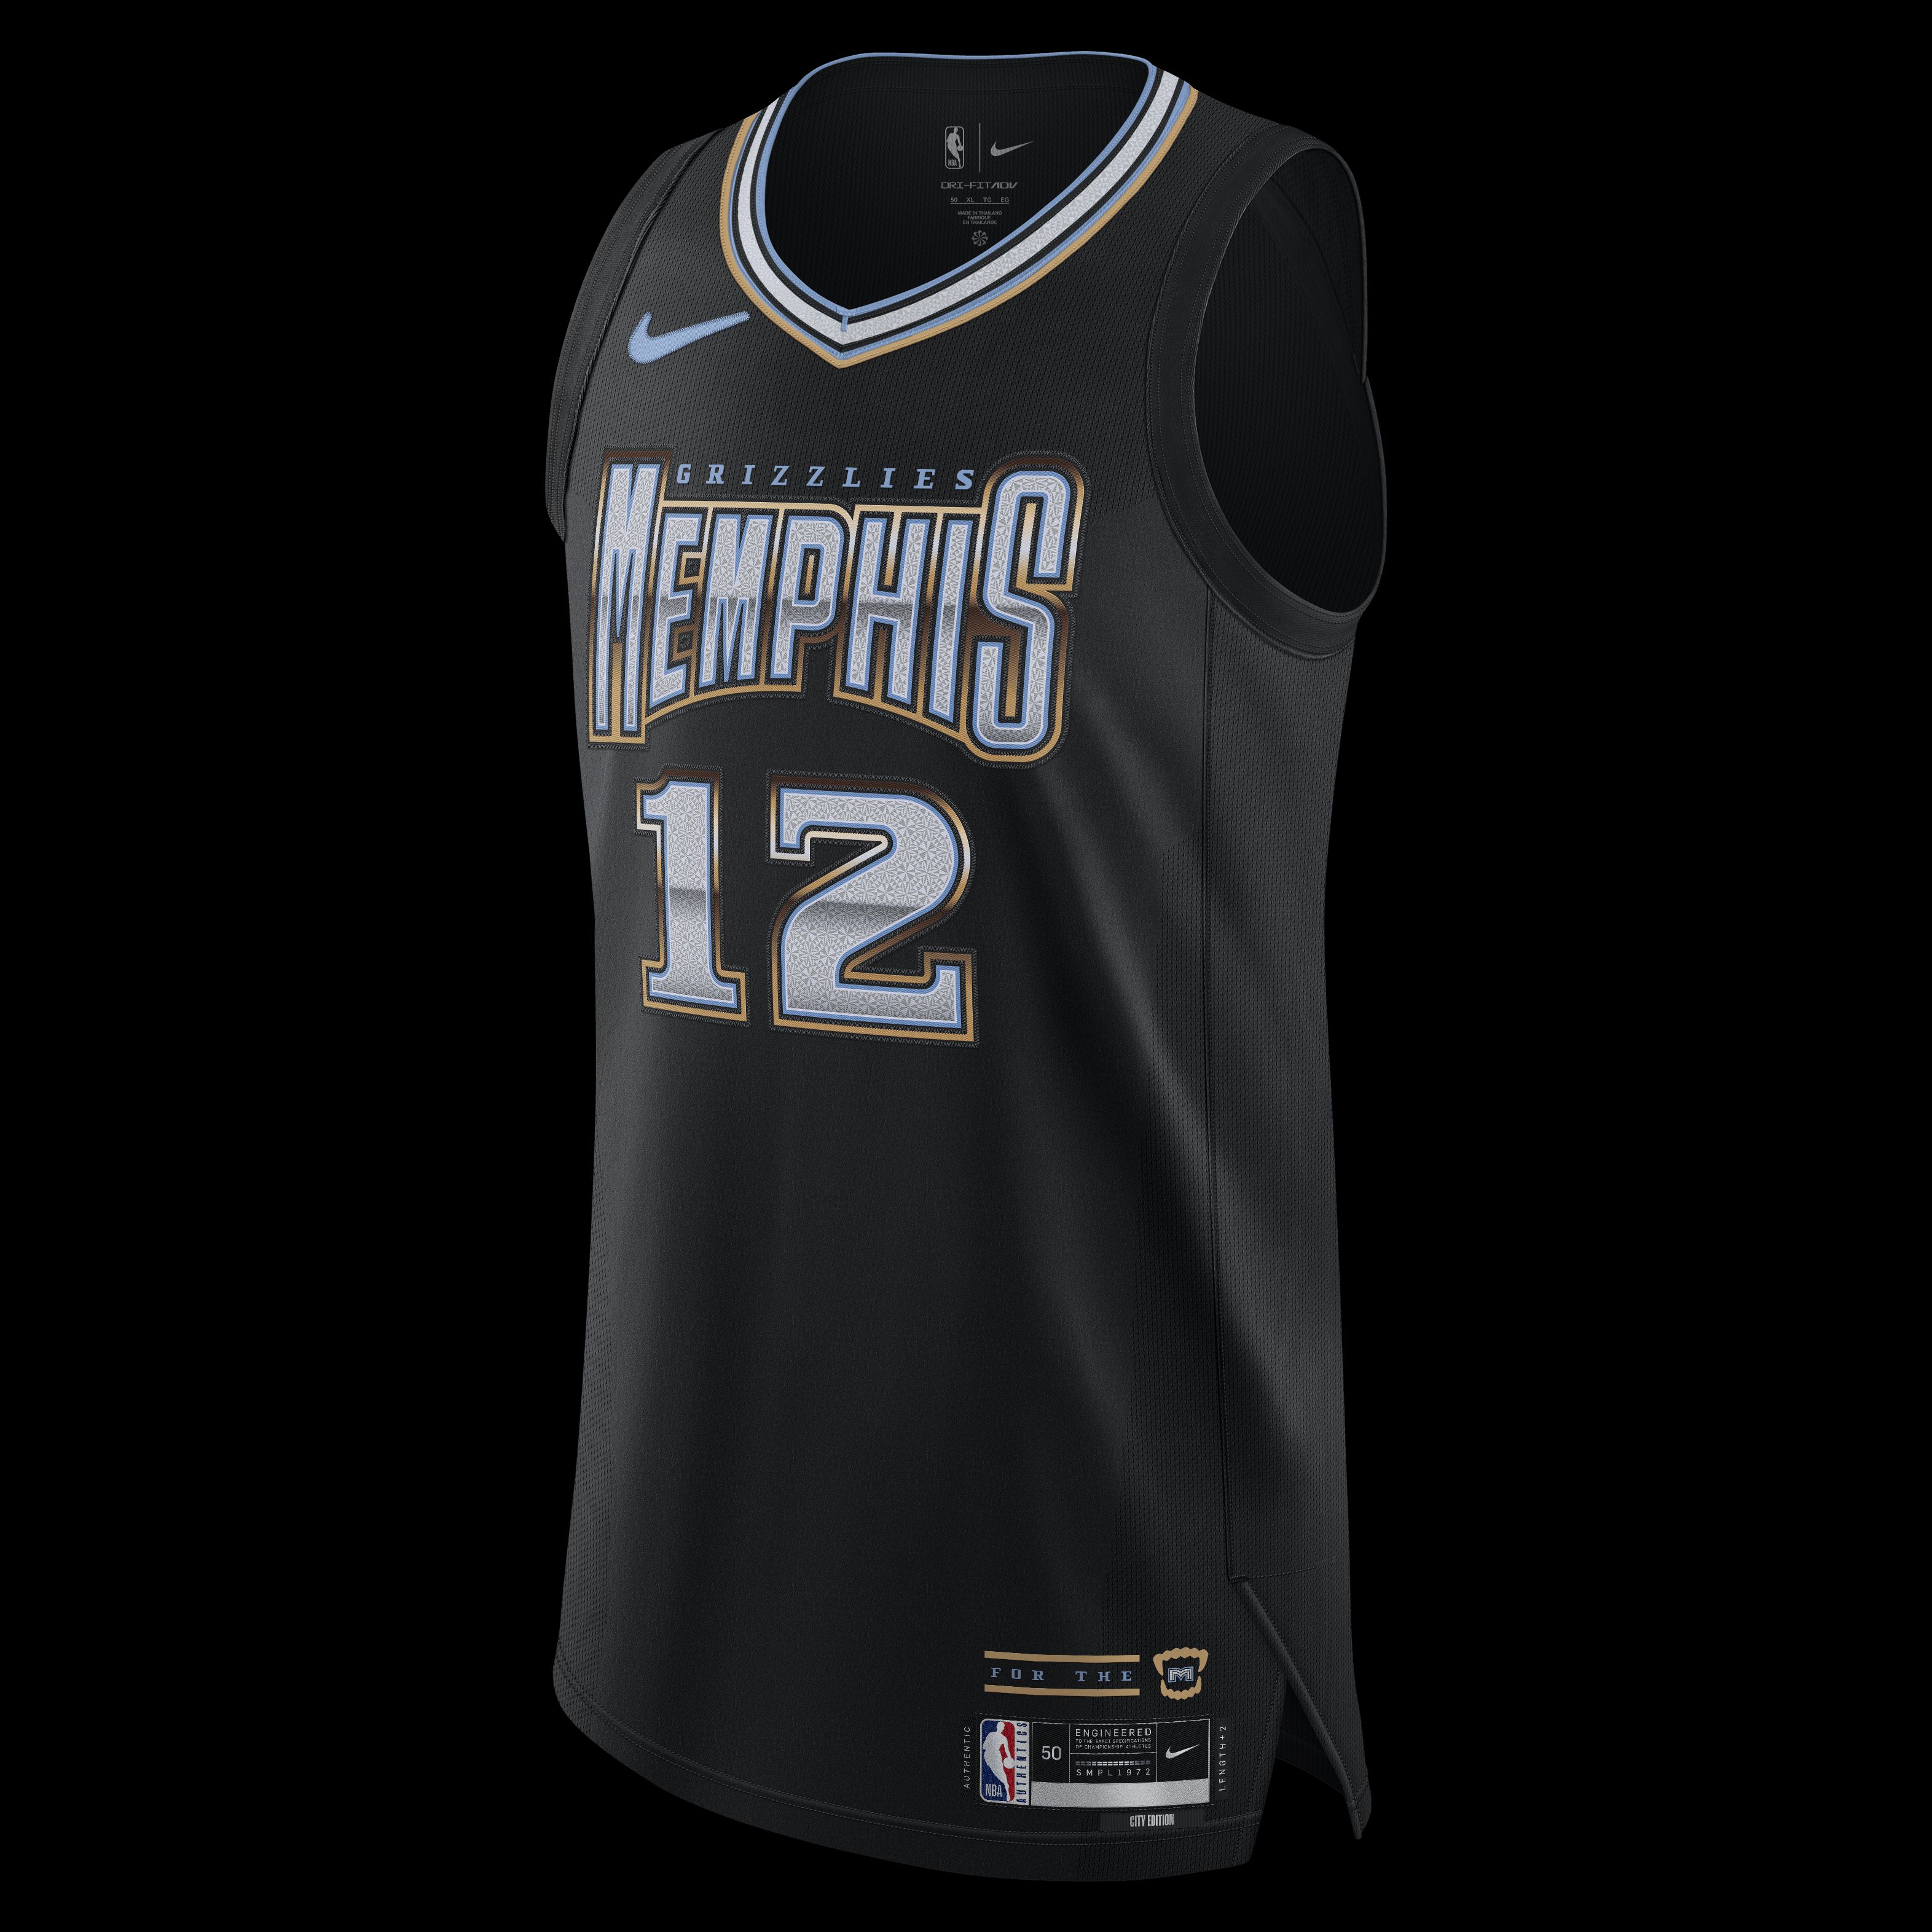 Memphis Grizzlies NBA Fan Jerseys for sale